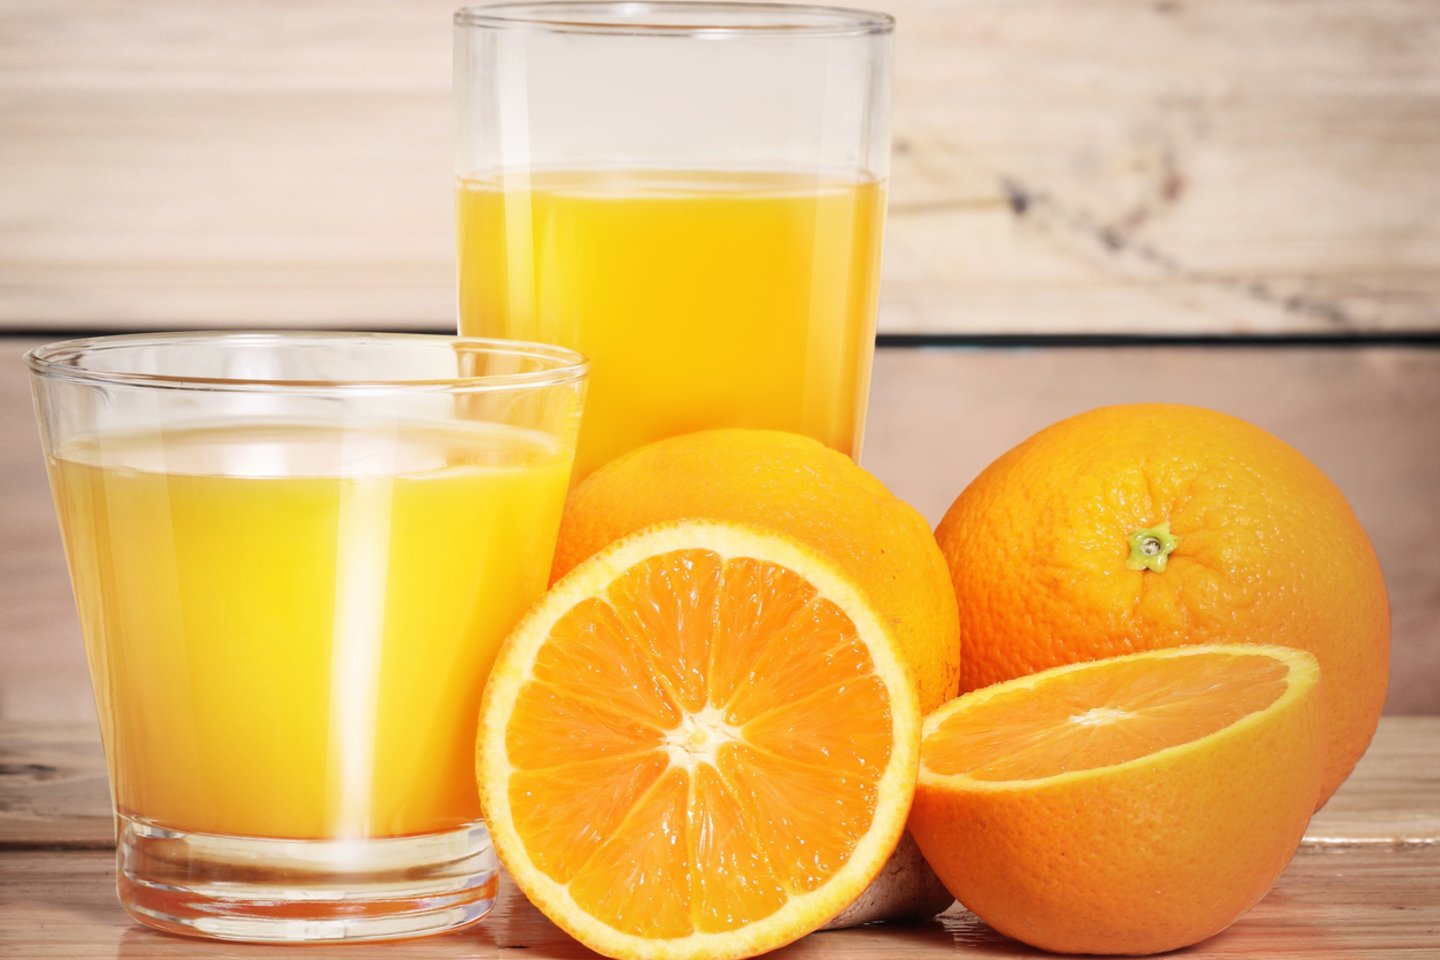  Vienoje apelsinų sulčių stiklinėje yra tiek koncentruoto cukraus, kiek penkiuose ar šešiuose neapdorotuose apelsinuose. O išgerti vieną stiklinę apelsinų sulčių yra žymiai paprasčiau, nei vienu prisėdimu suvalgyti 5-6 apelsinus.<br> 123rf nuotr.